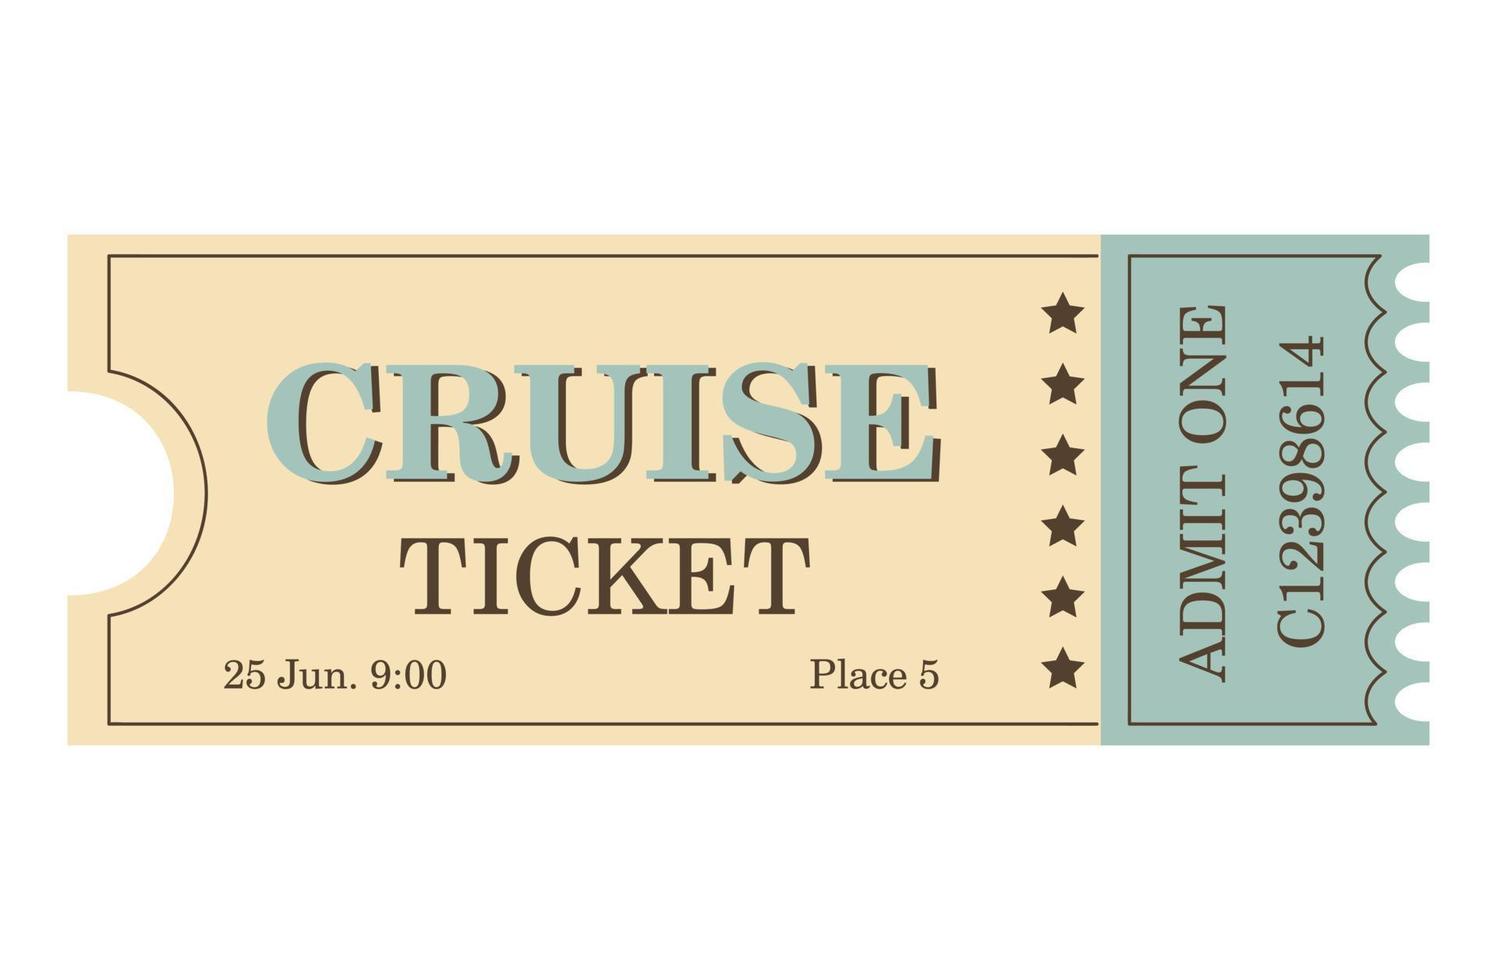 klassiek retro ticket voor bioscoop, circus, film, theater, cruise, concert en andere evenementen. oud wijnoogst stijl in pastel kleuren. vector